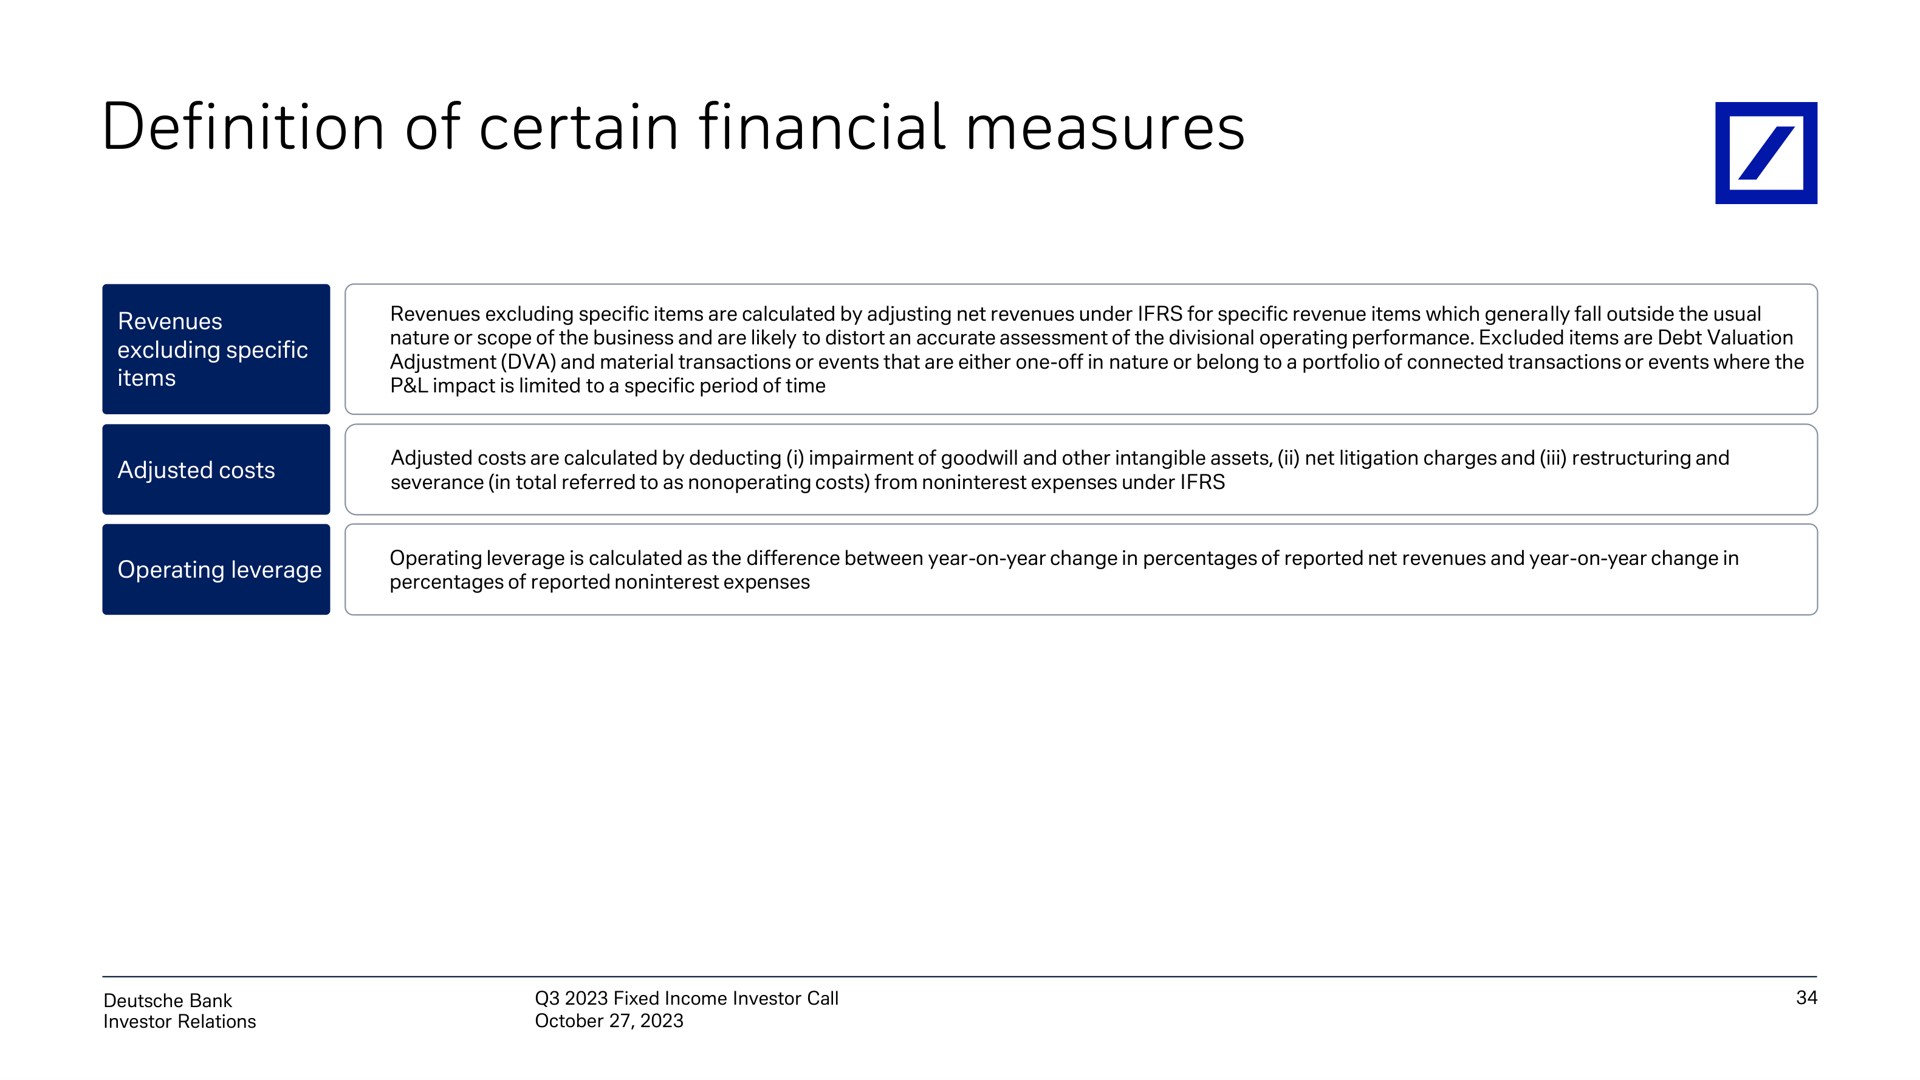 definition of certain financial measures | Deutsche Bank